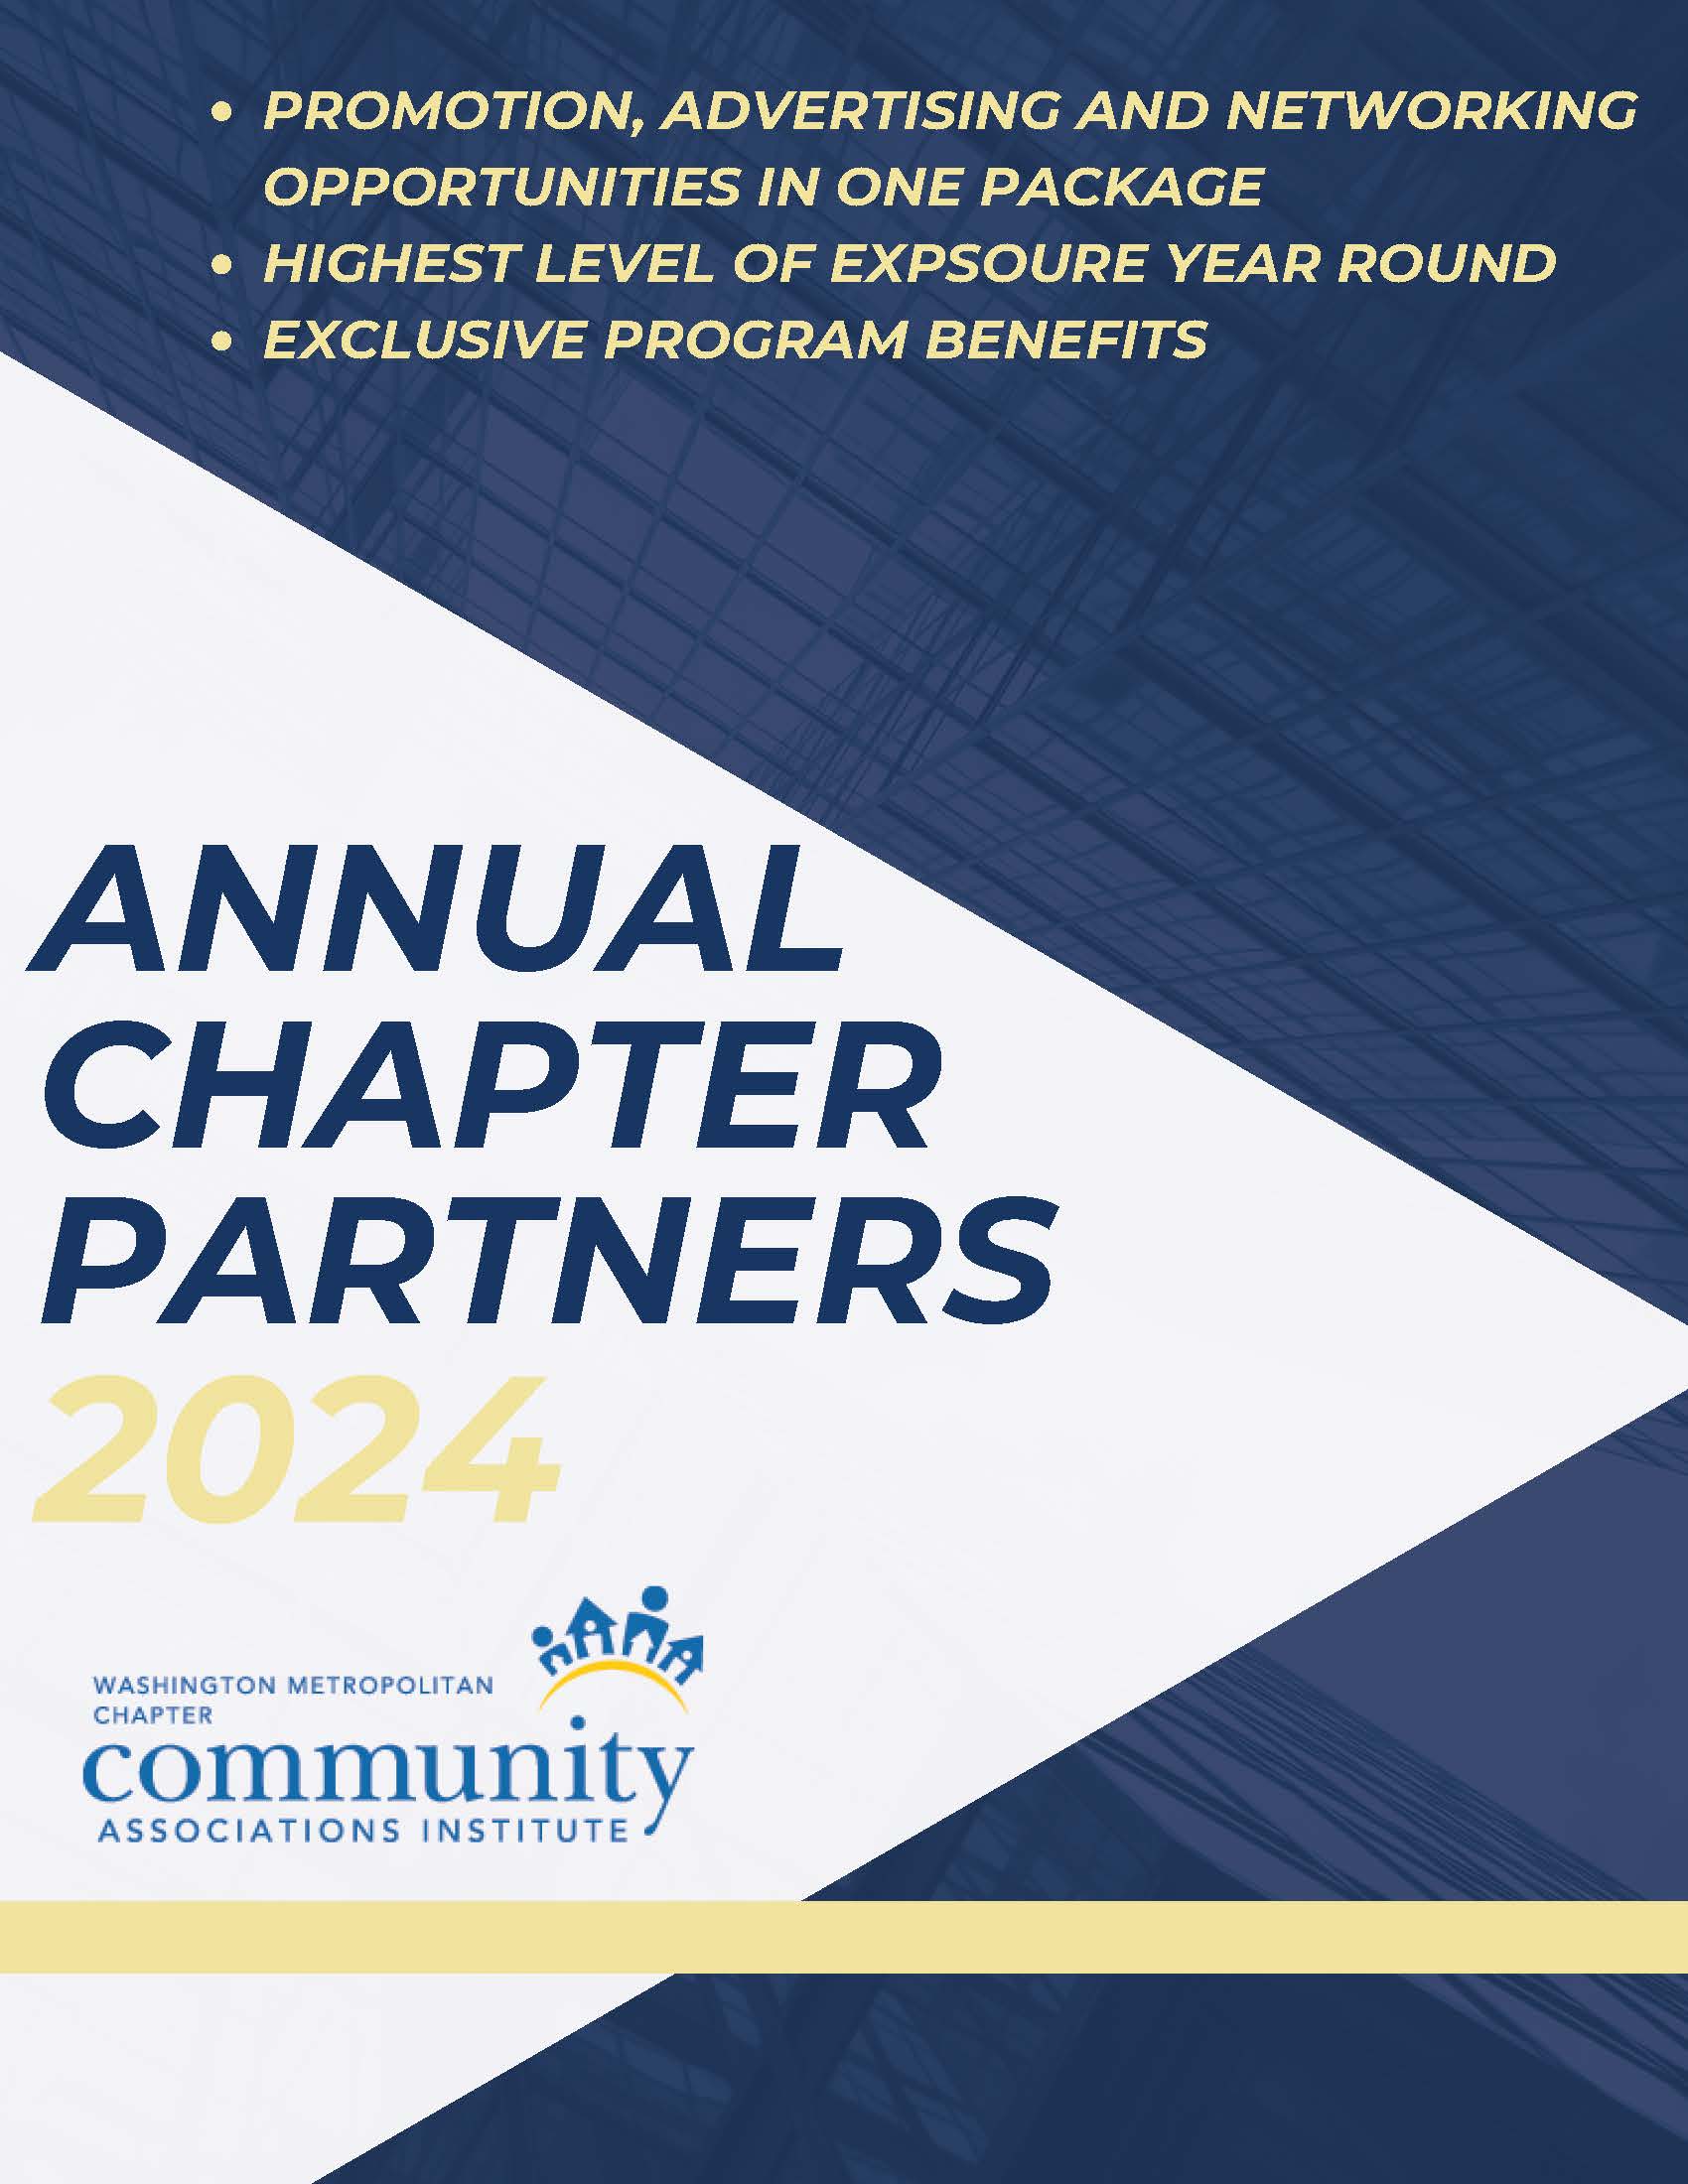 2024 Annual Chapter Partner Program Image